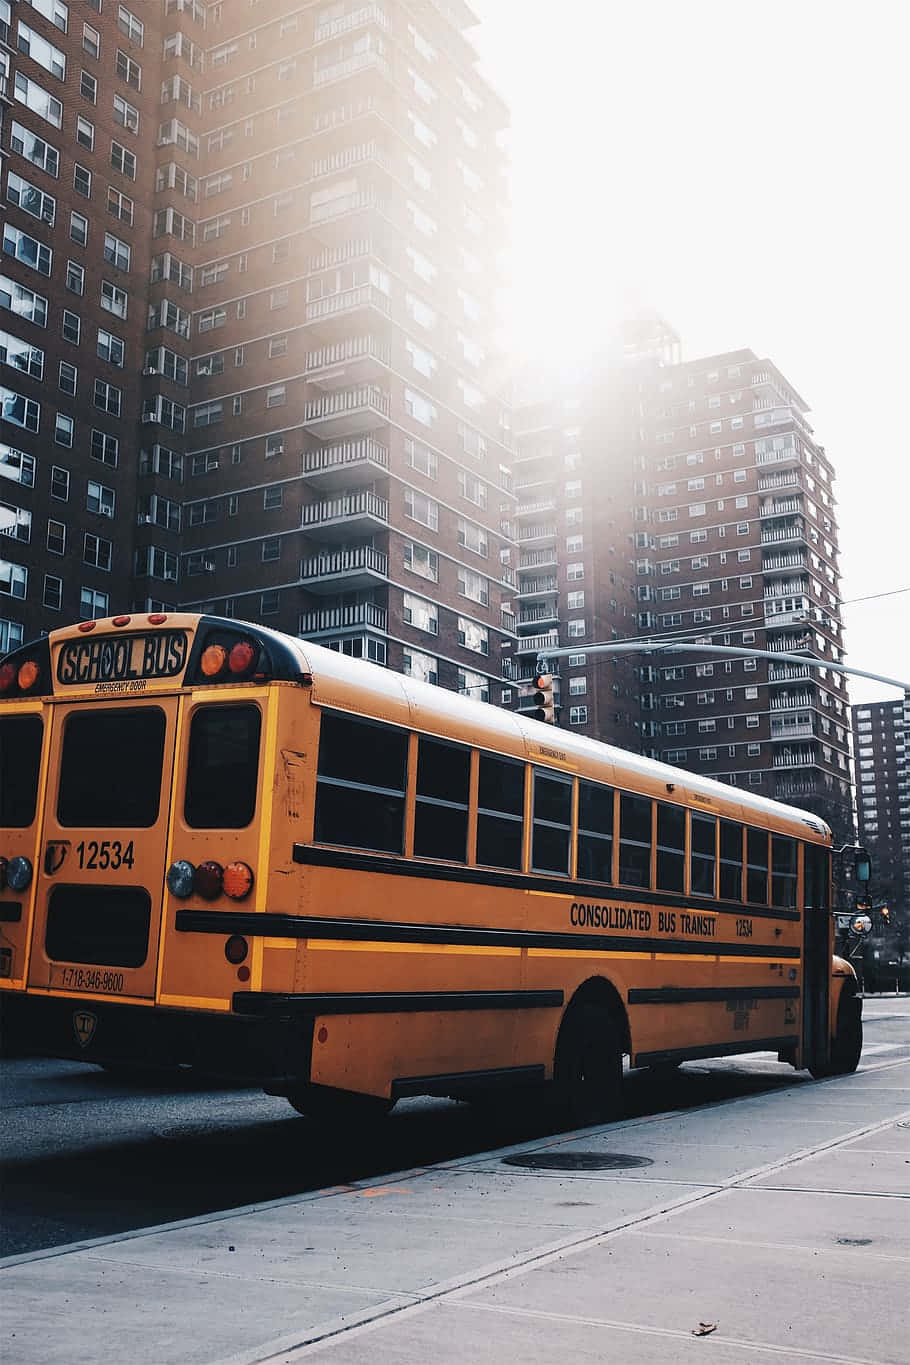 School Bus In The City Wallpaper